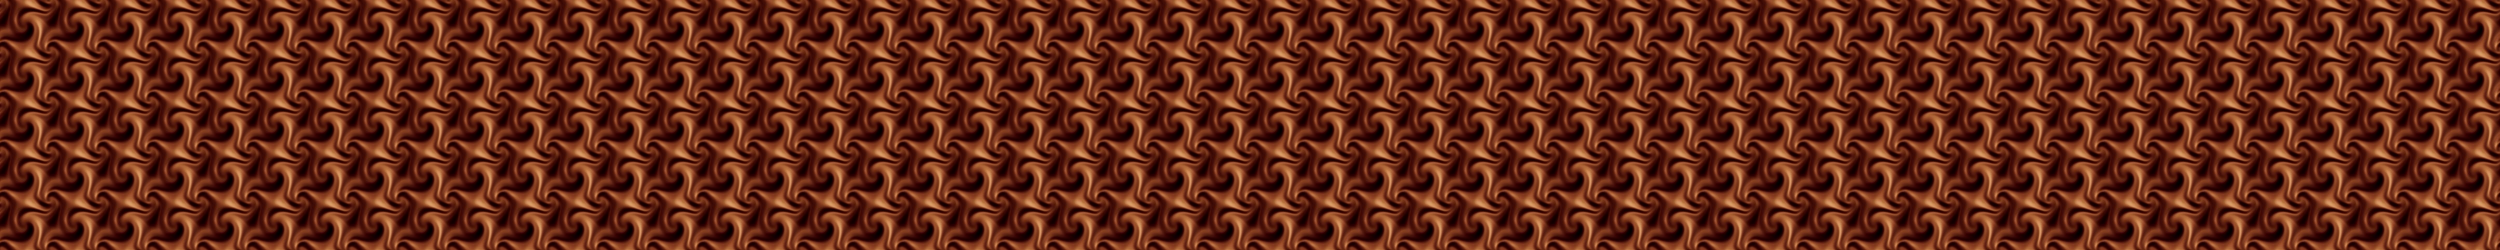 Chocolate swirl divider